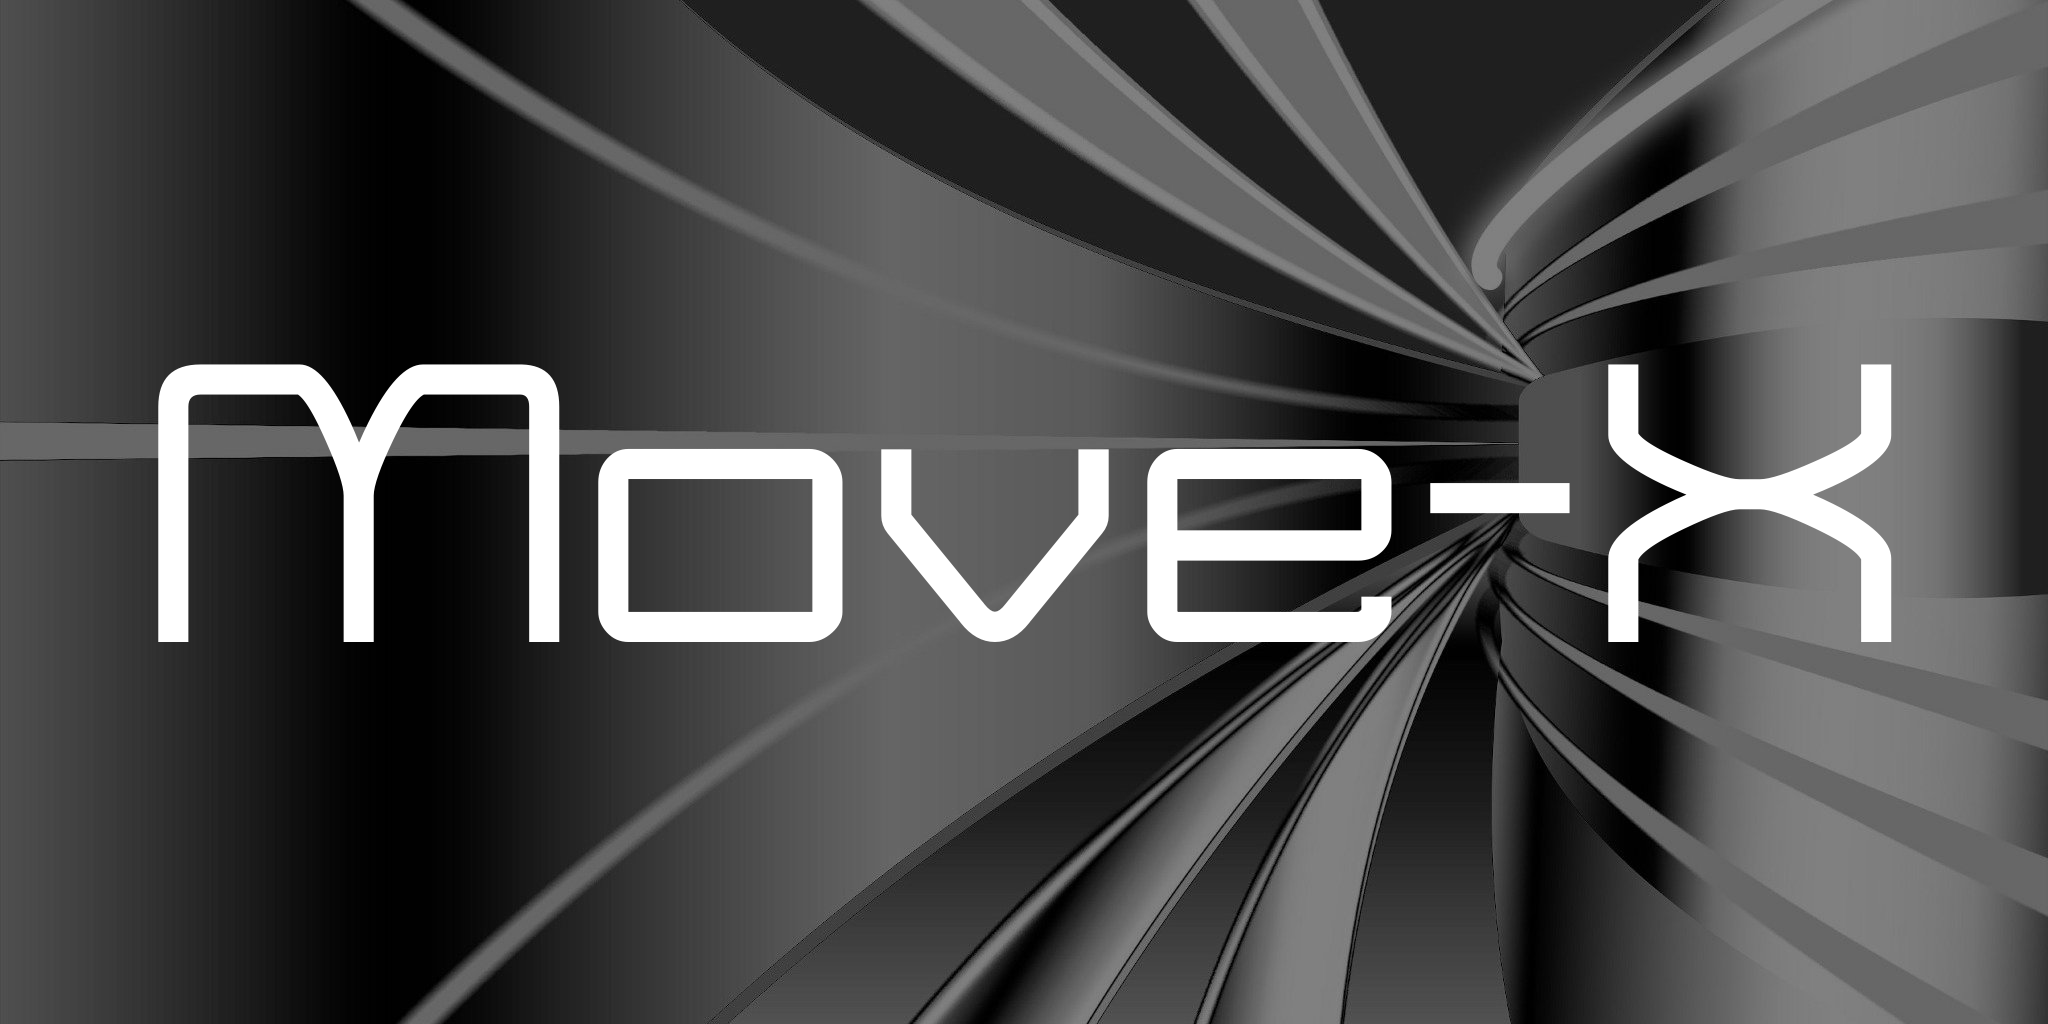 Move X